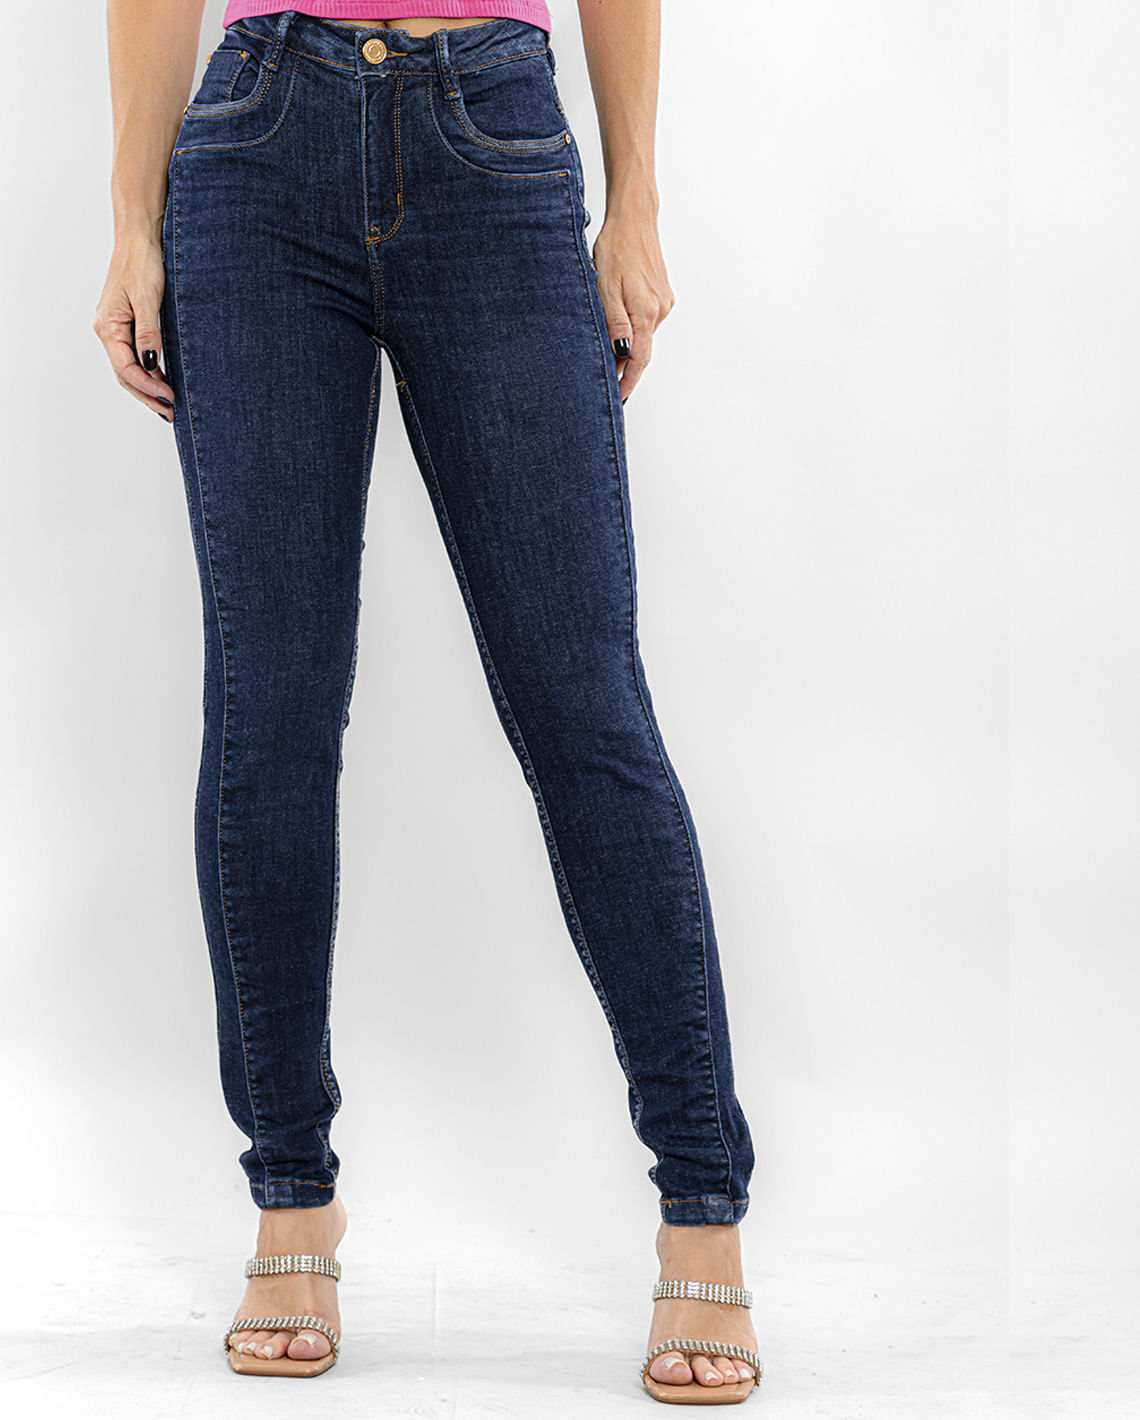 Calça Jeans Feminina Skinny com Recortes Frontais